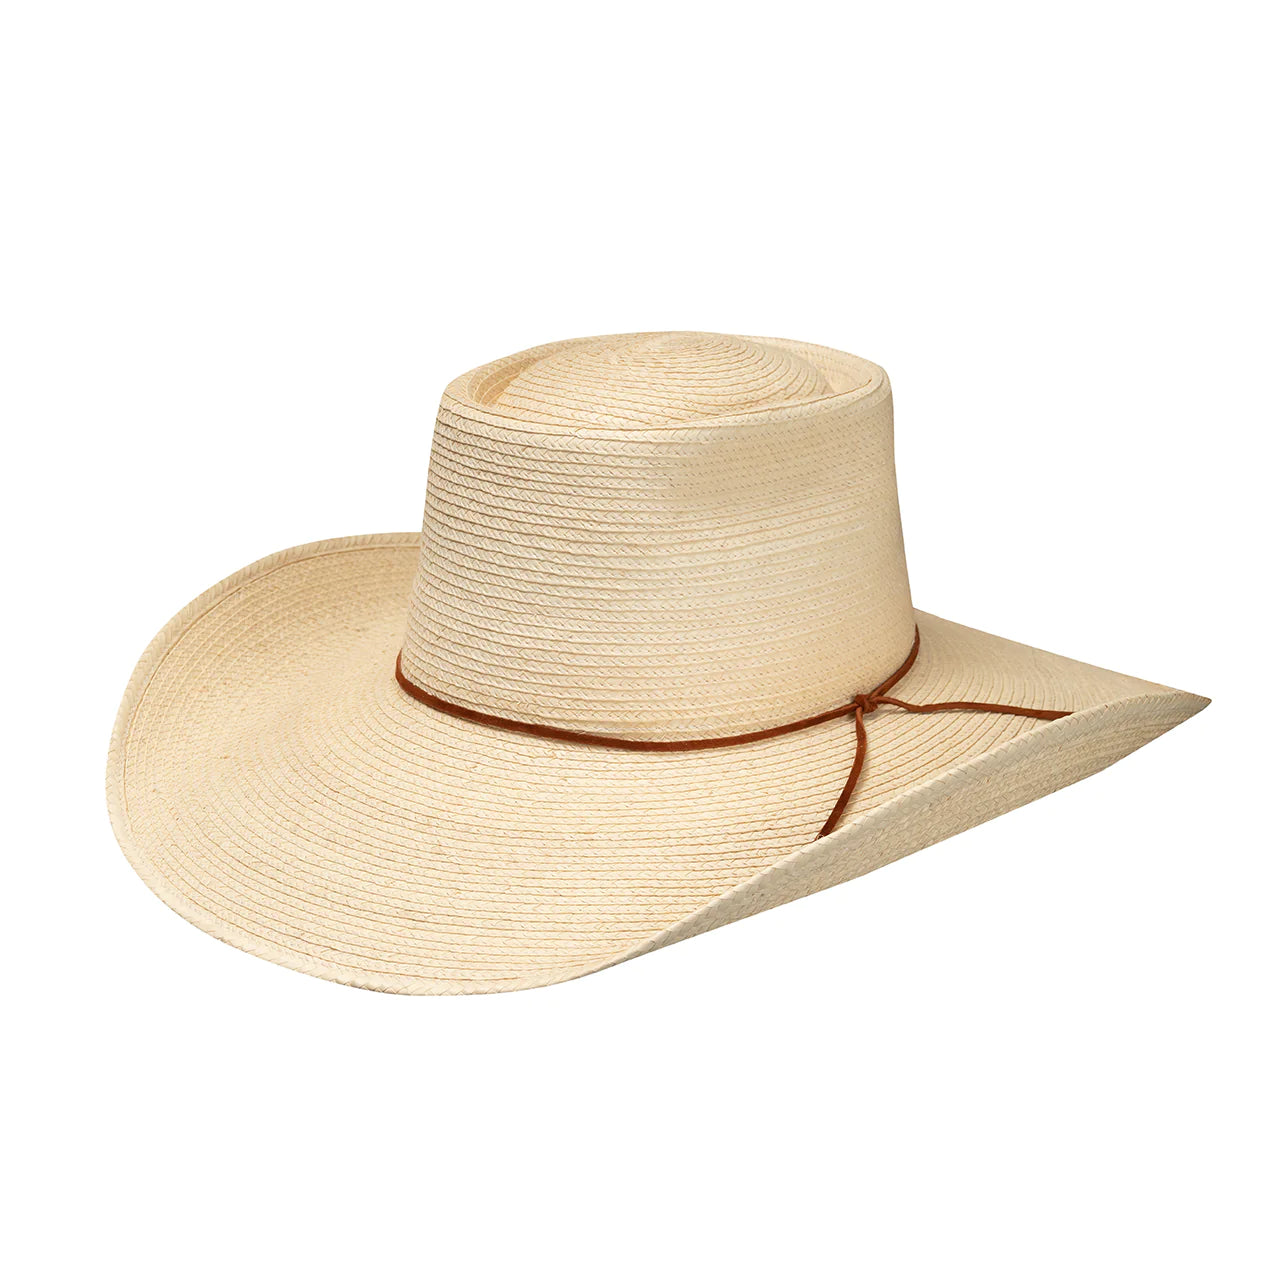 Sunbody Reata 3 Palm Leaf Hat